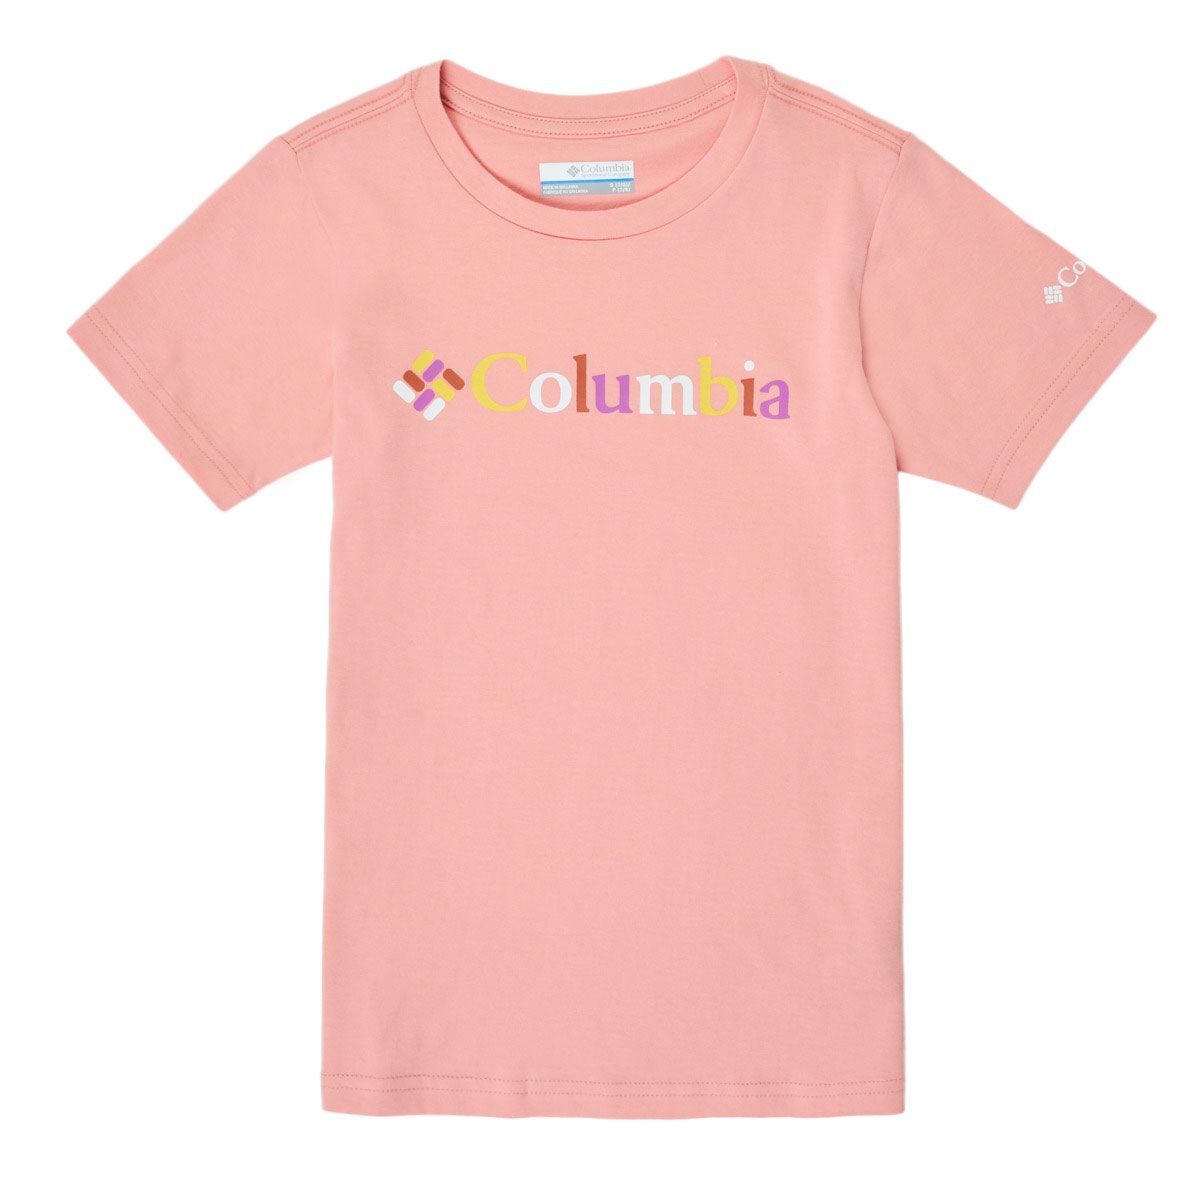 Columbia Sweet Pines Graphic Short Sleeve Tee, t-skjorte junior Faux Pink Kalei 1931281 673 L (14/16 år) 2021